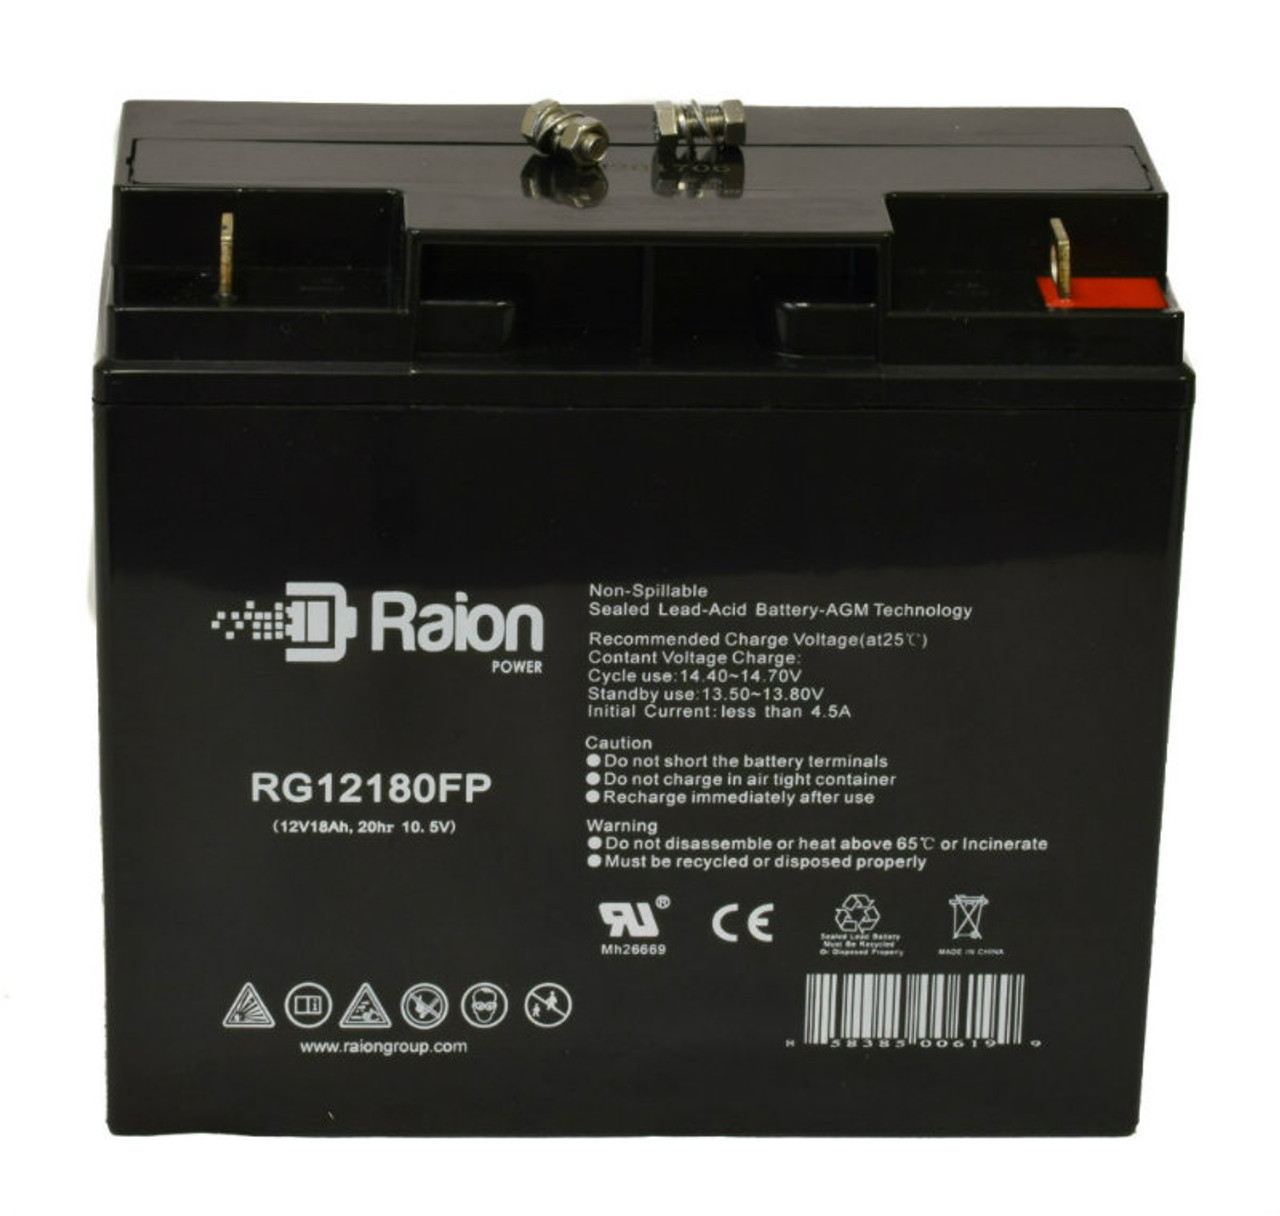 Raion Power RG12180FP 12V 18Ah AGM Battery for Peak PKC0BK 450 Amp Jump Starter